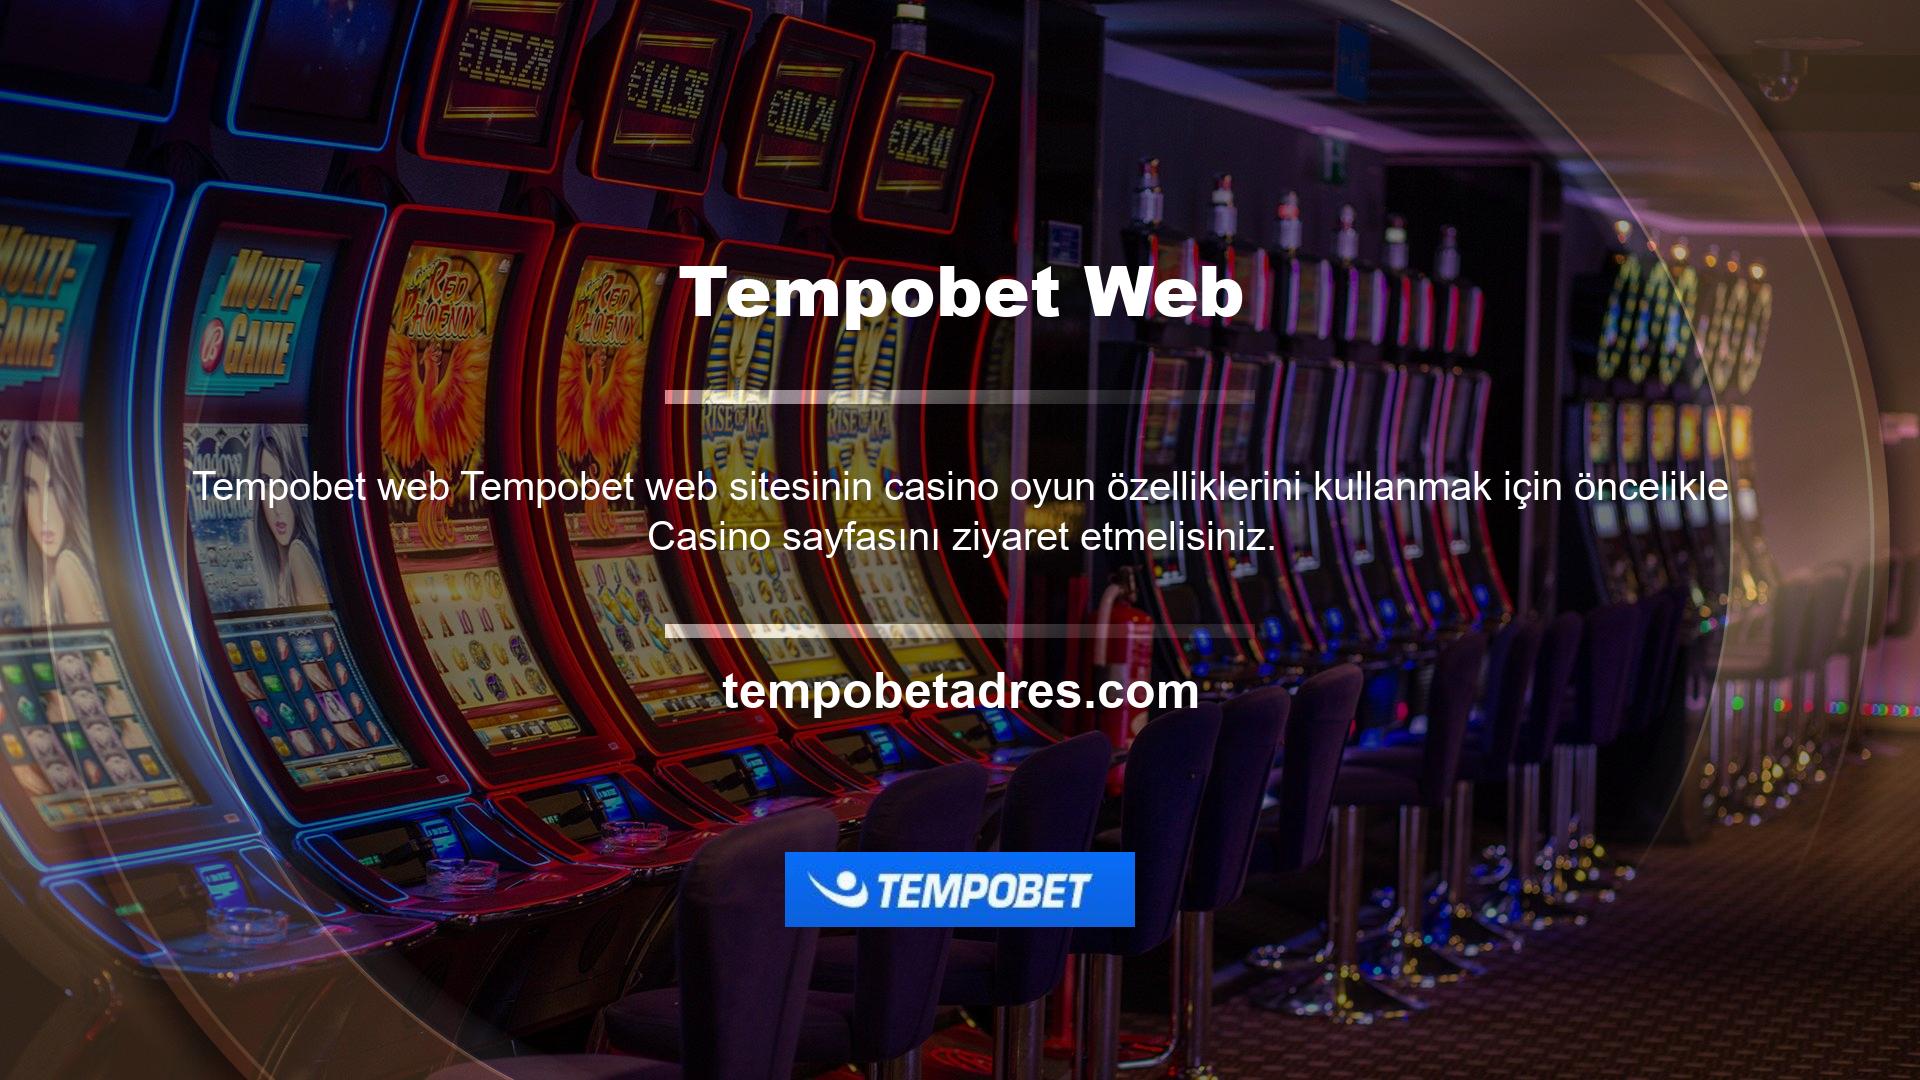 Bunun sebebi ise Tempobet ana sayfası, menünün üst kısmında yer alan casino butonuna tıklayarak casino oyunlarını görebileceğiniz, Tempobet şikayetlerini ve kullanıcı memnuniyetini öğrenebileceğiniz bir alandır